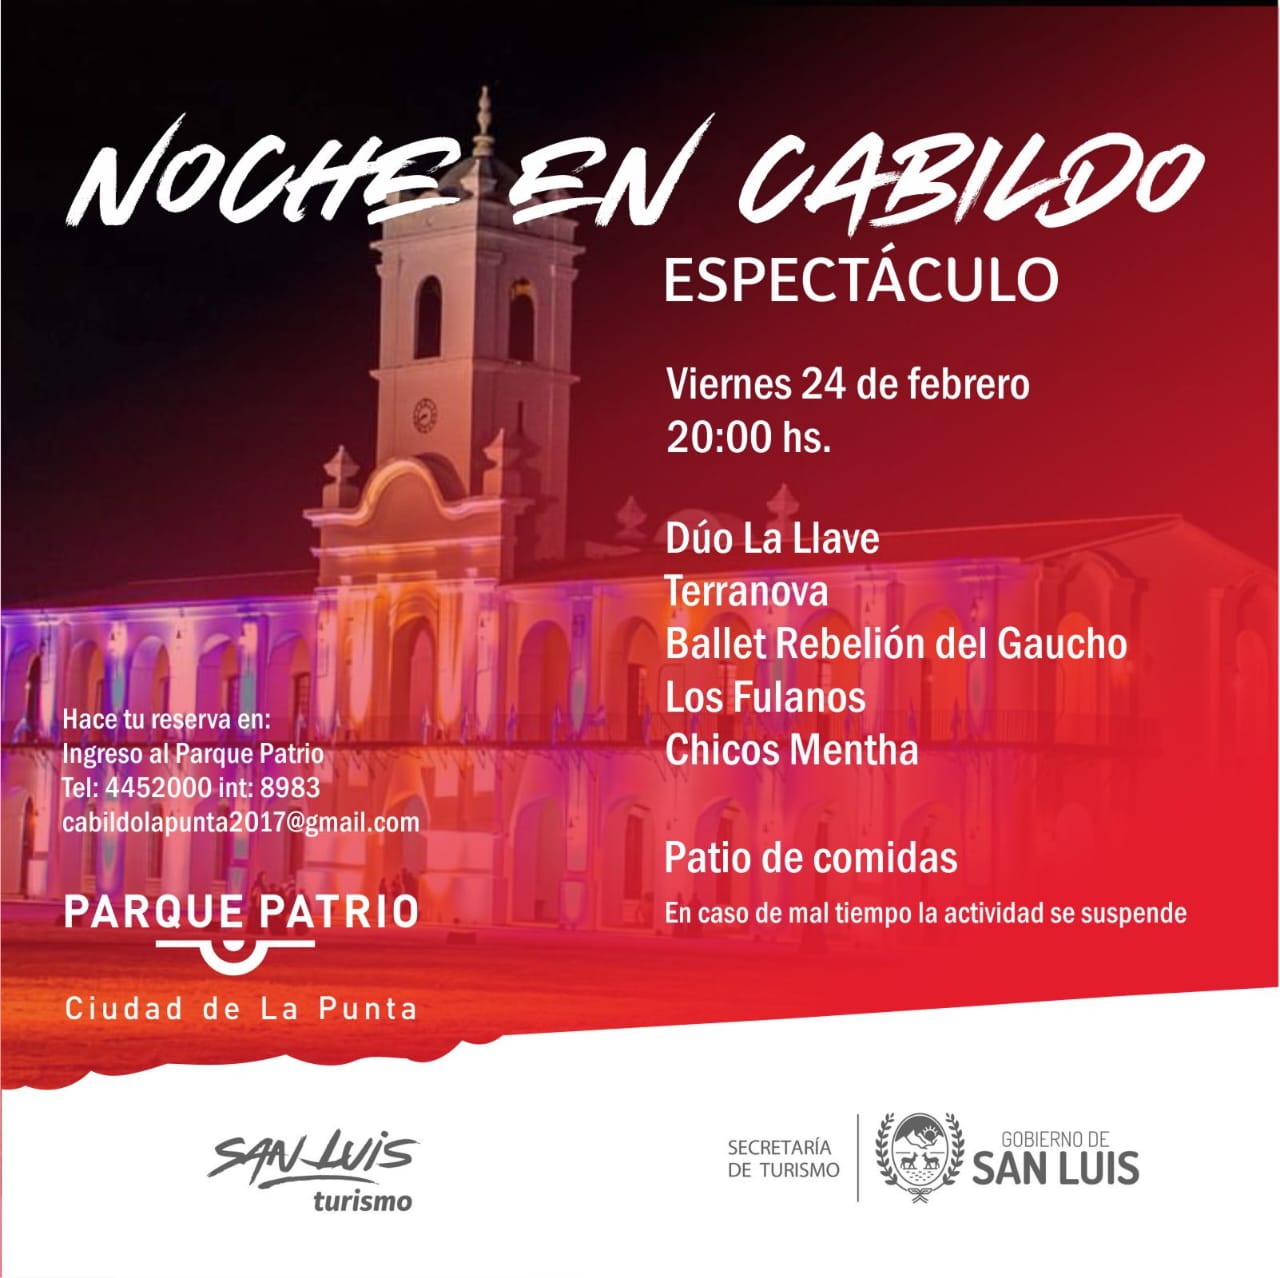 Una noche especial en el Cabildo: gastronomía y números artísticos